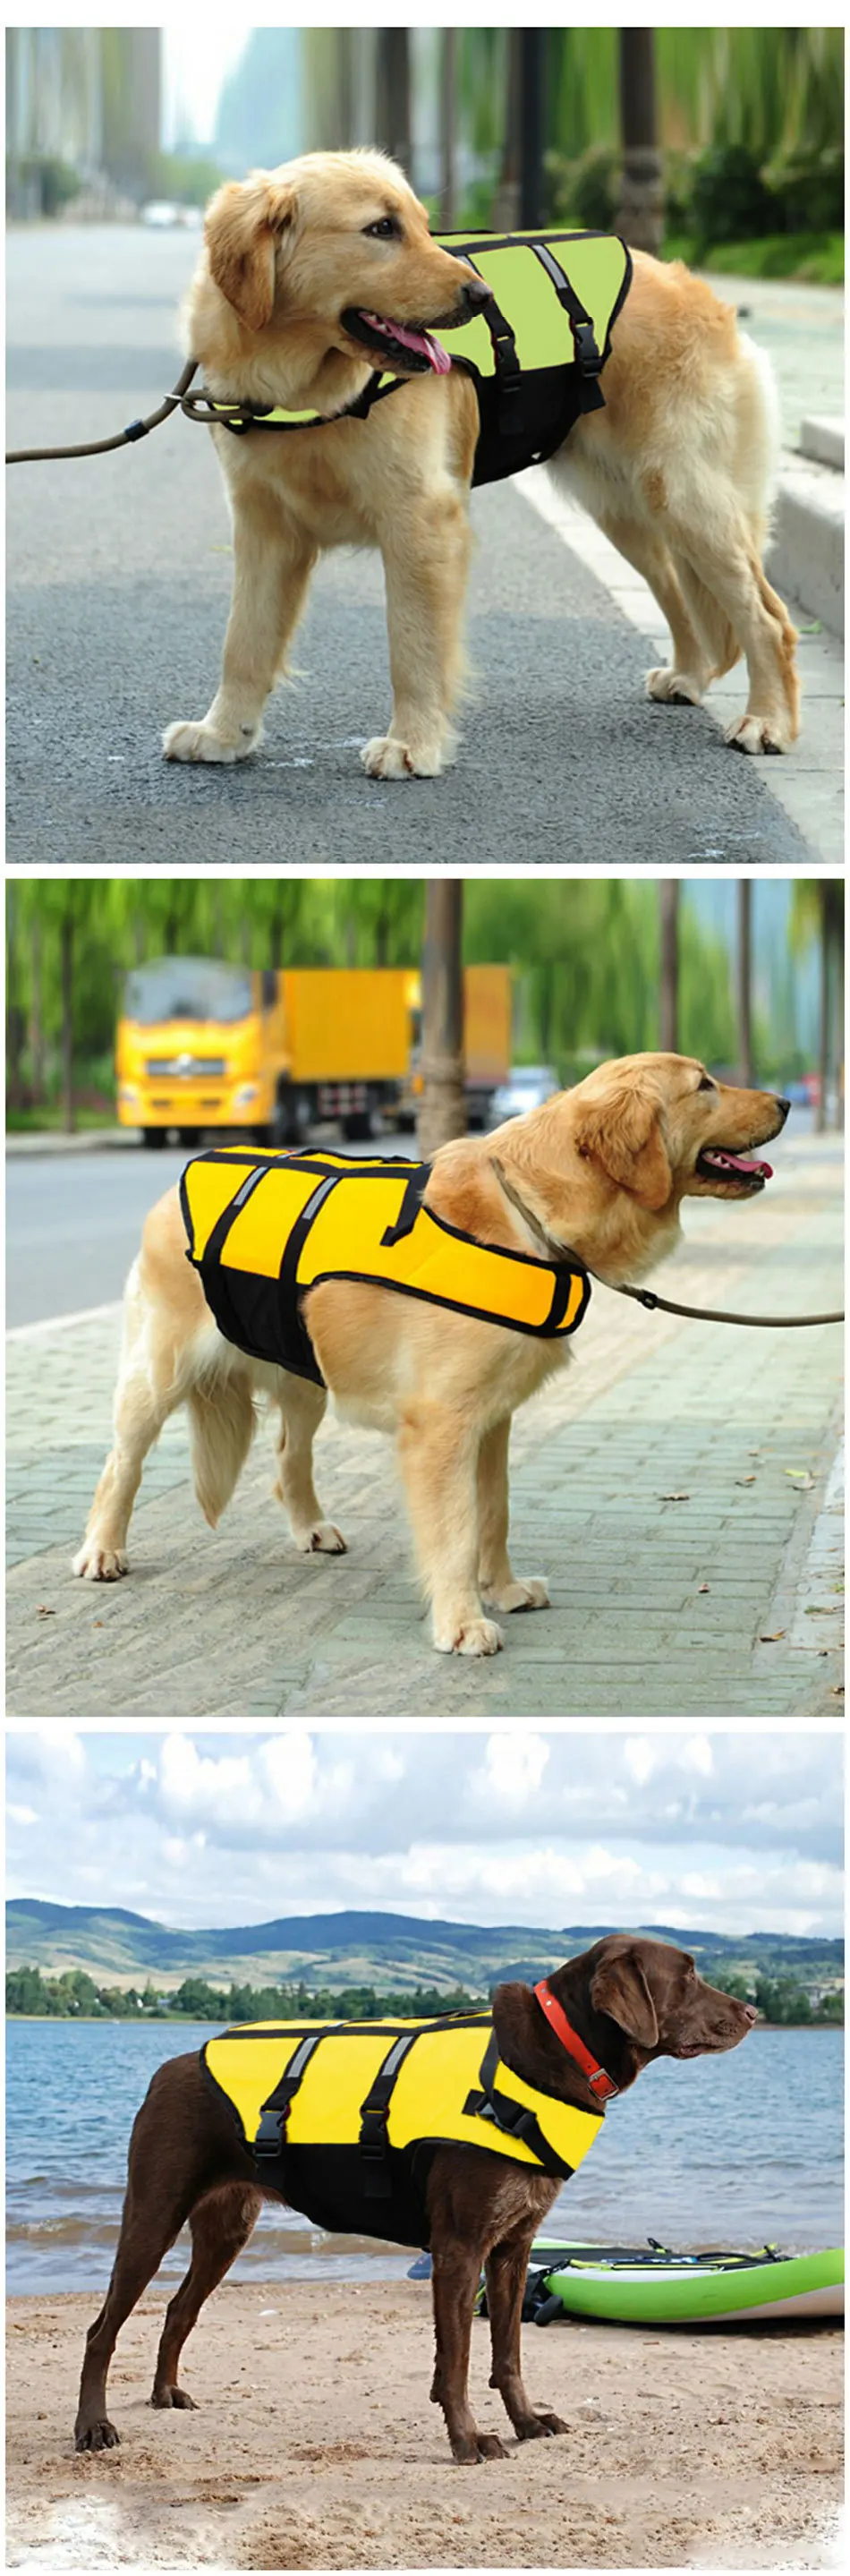 RFWCAK куртка для домашних животных оксфордская защитная одежда спасательный жилет для питомцев летняя одежда спасательный жилет для собак Купальники Большой спасательный жилет для собаки